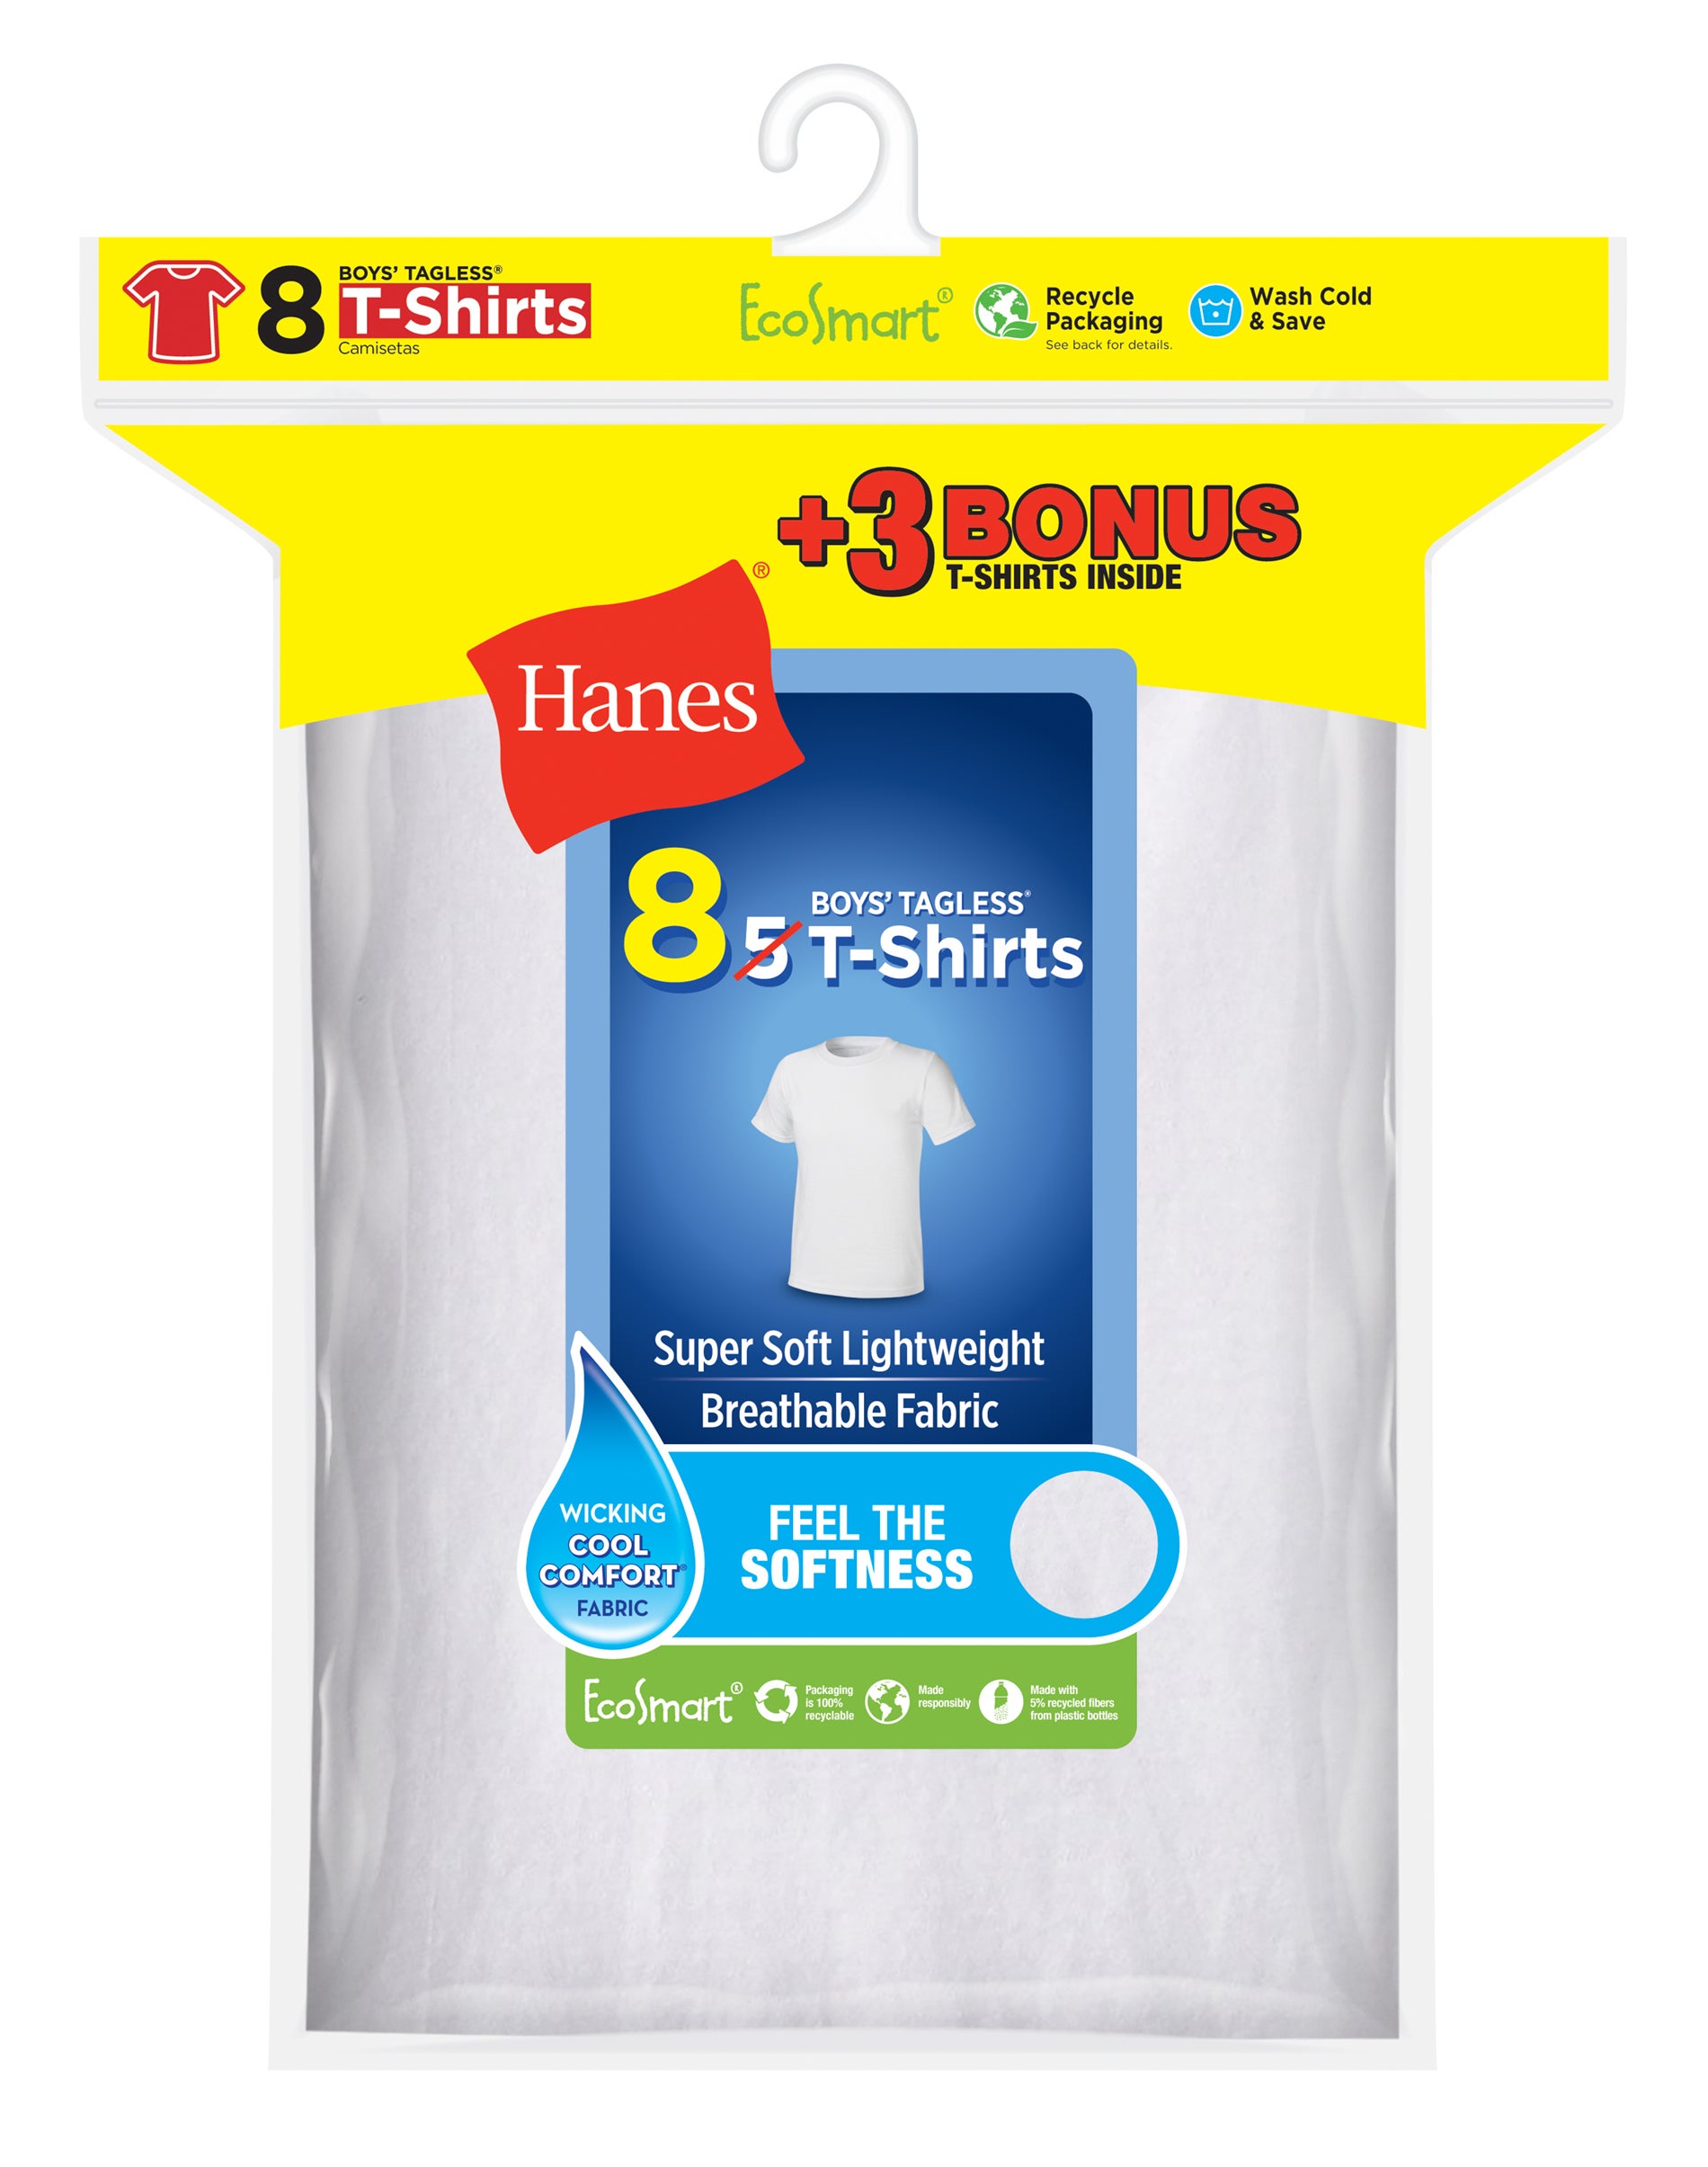 Hanes Boys Undershirts, 5 + 3 Bonus Pack Tagless EcoSmart White Crew Undershirts, Sizes S-XL - image 1 of 7